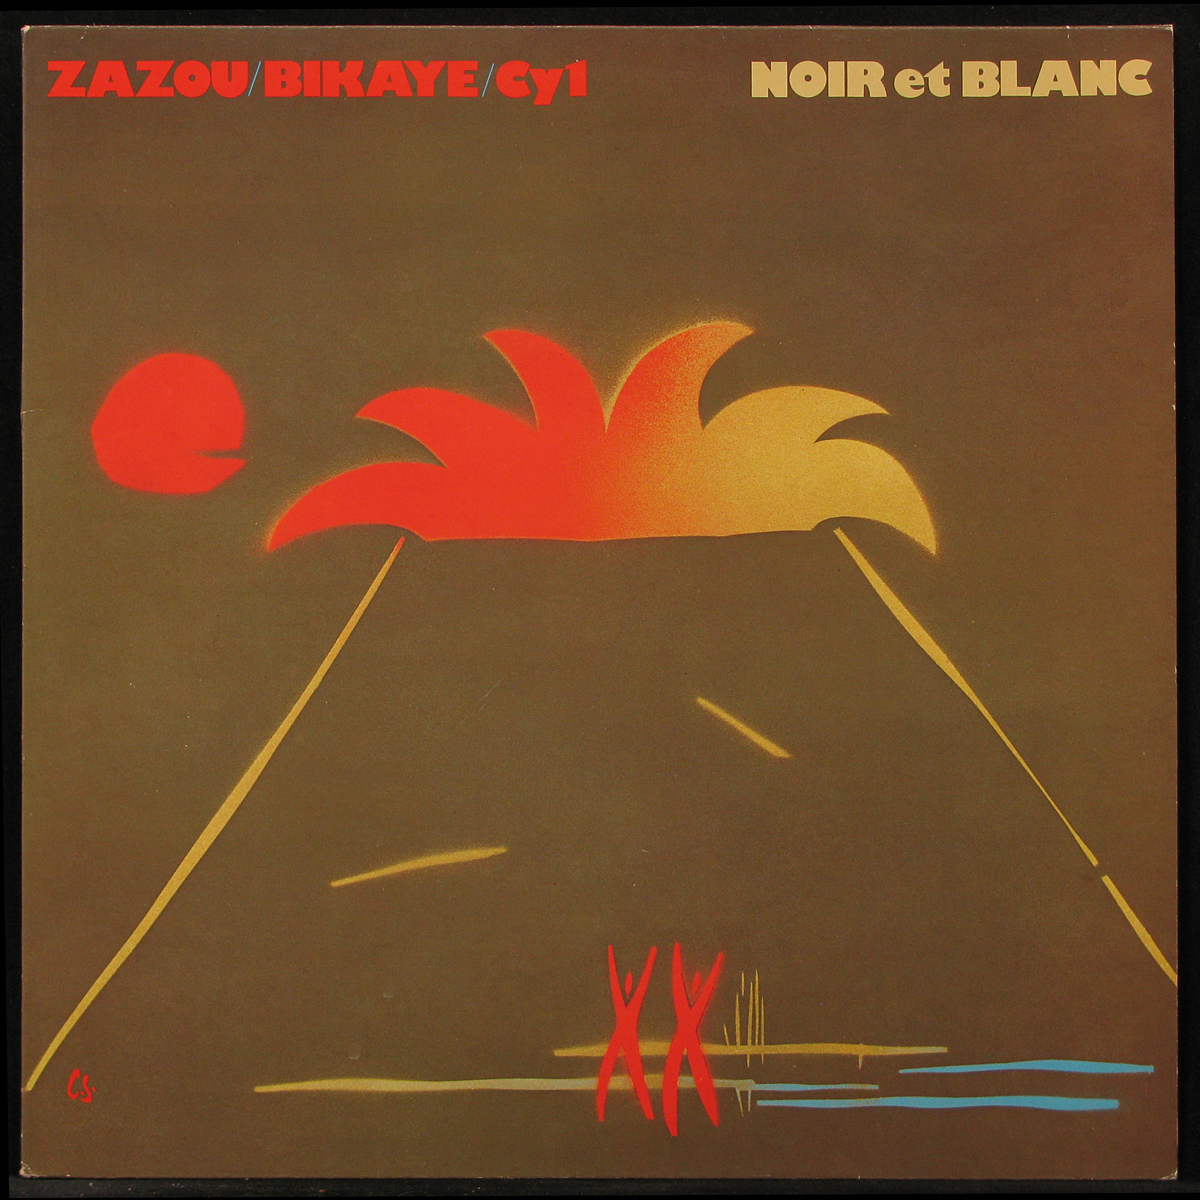 LP Zazou / Bikaye / Cy 1 — Noir Et Blanc фото